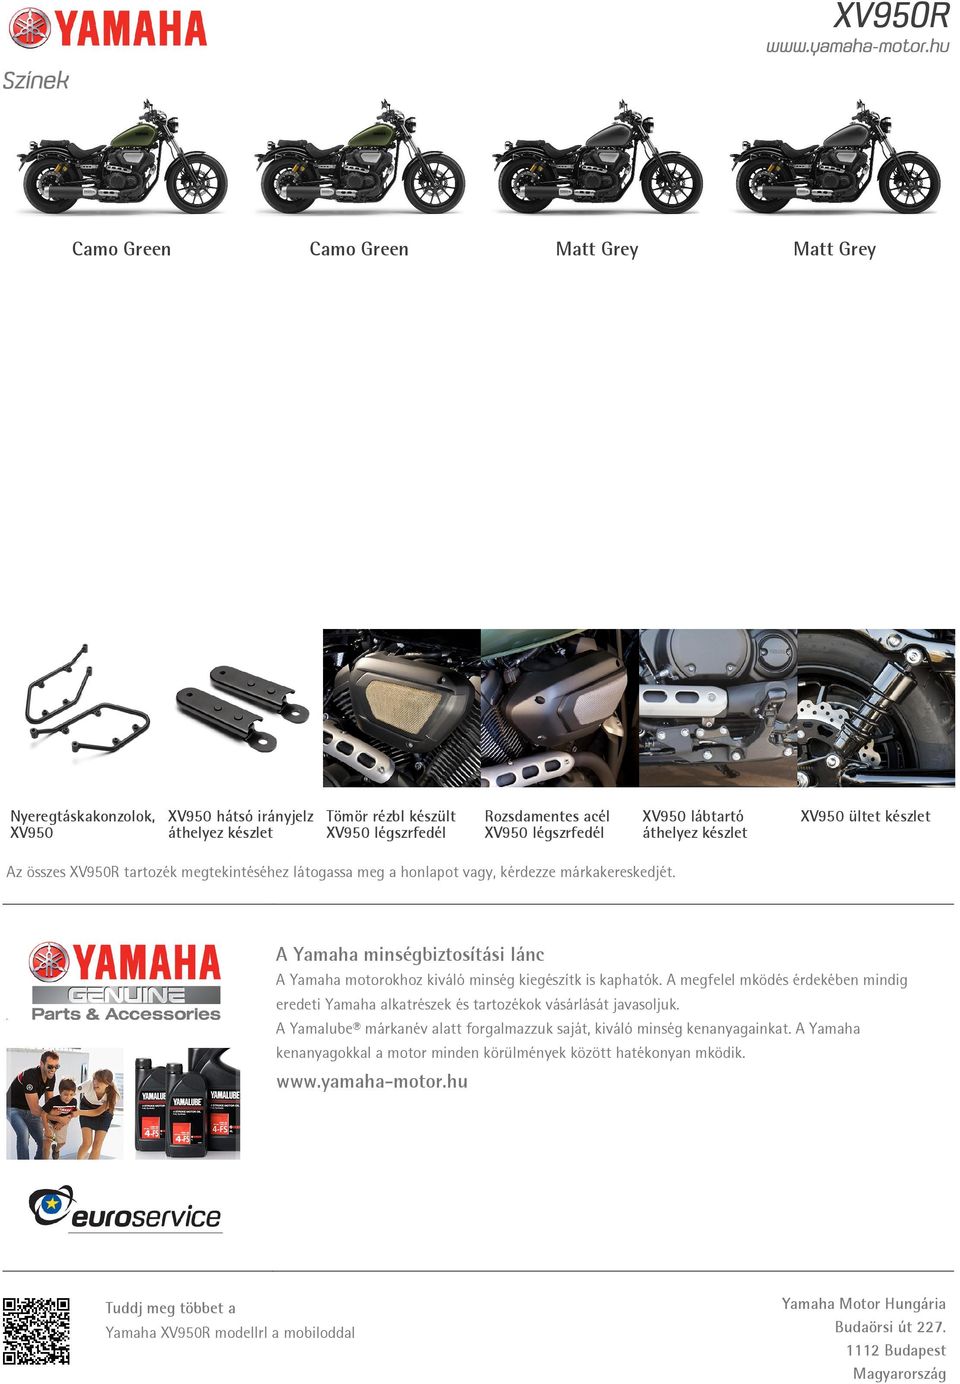 A Yamaha minségbiztosítási lánc A Yamaha motorokhoz kiváló minség kiegészítk is kaphatók. A megfelel mködés mindig eredeti Yamaha alkatrészek és tartozékok vásárlását javasoljuk.